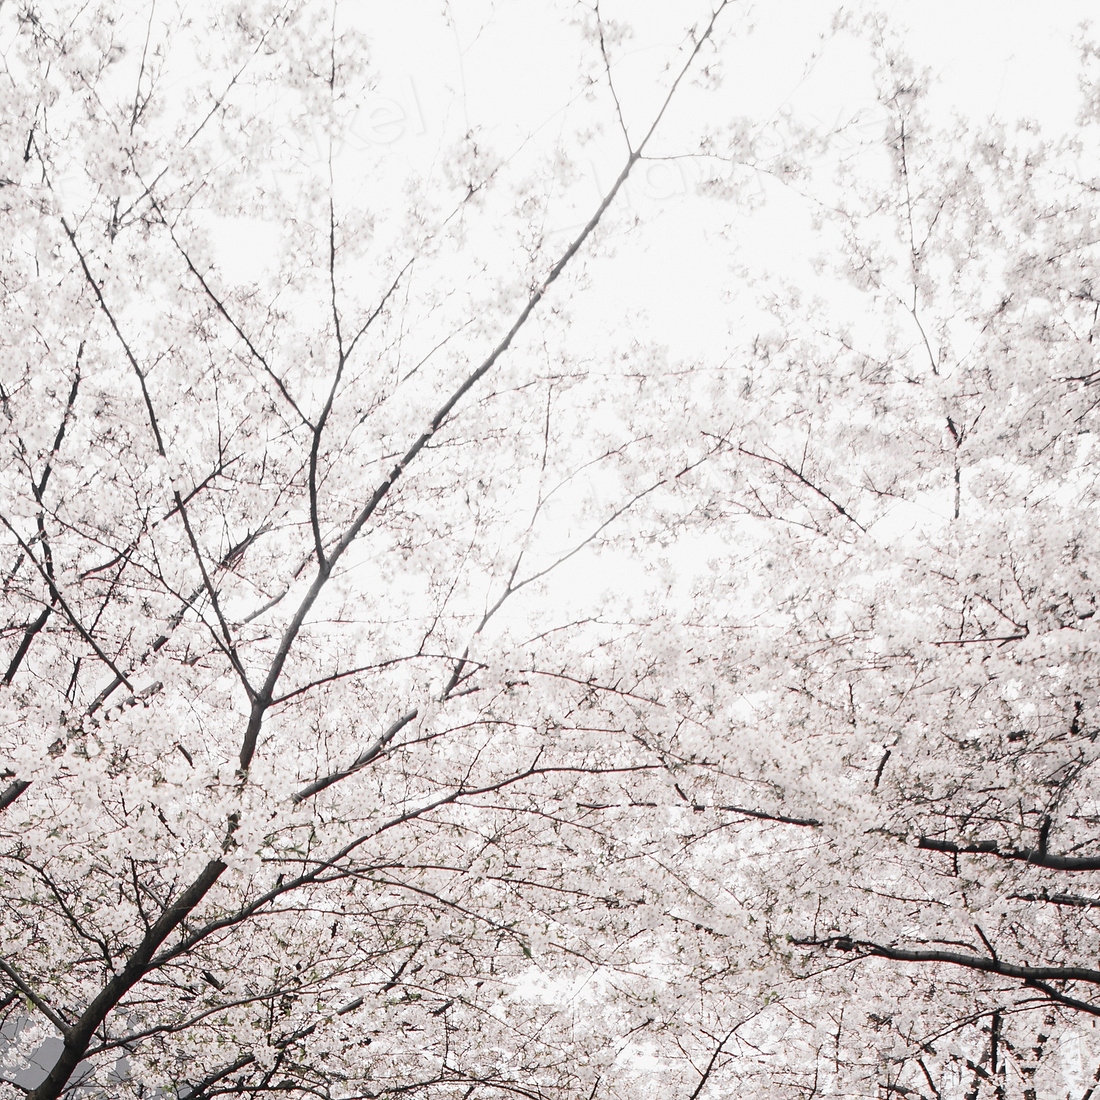 White Sakura blooming | Premium Photo - rawpixel